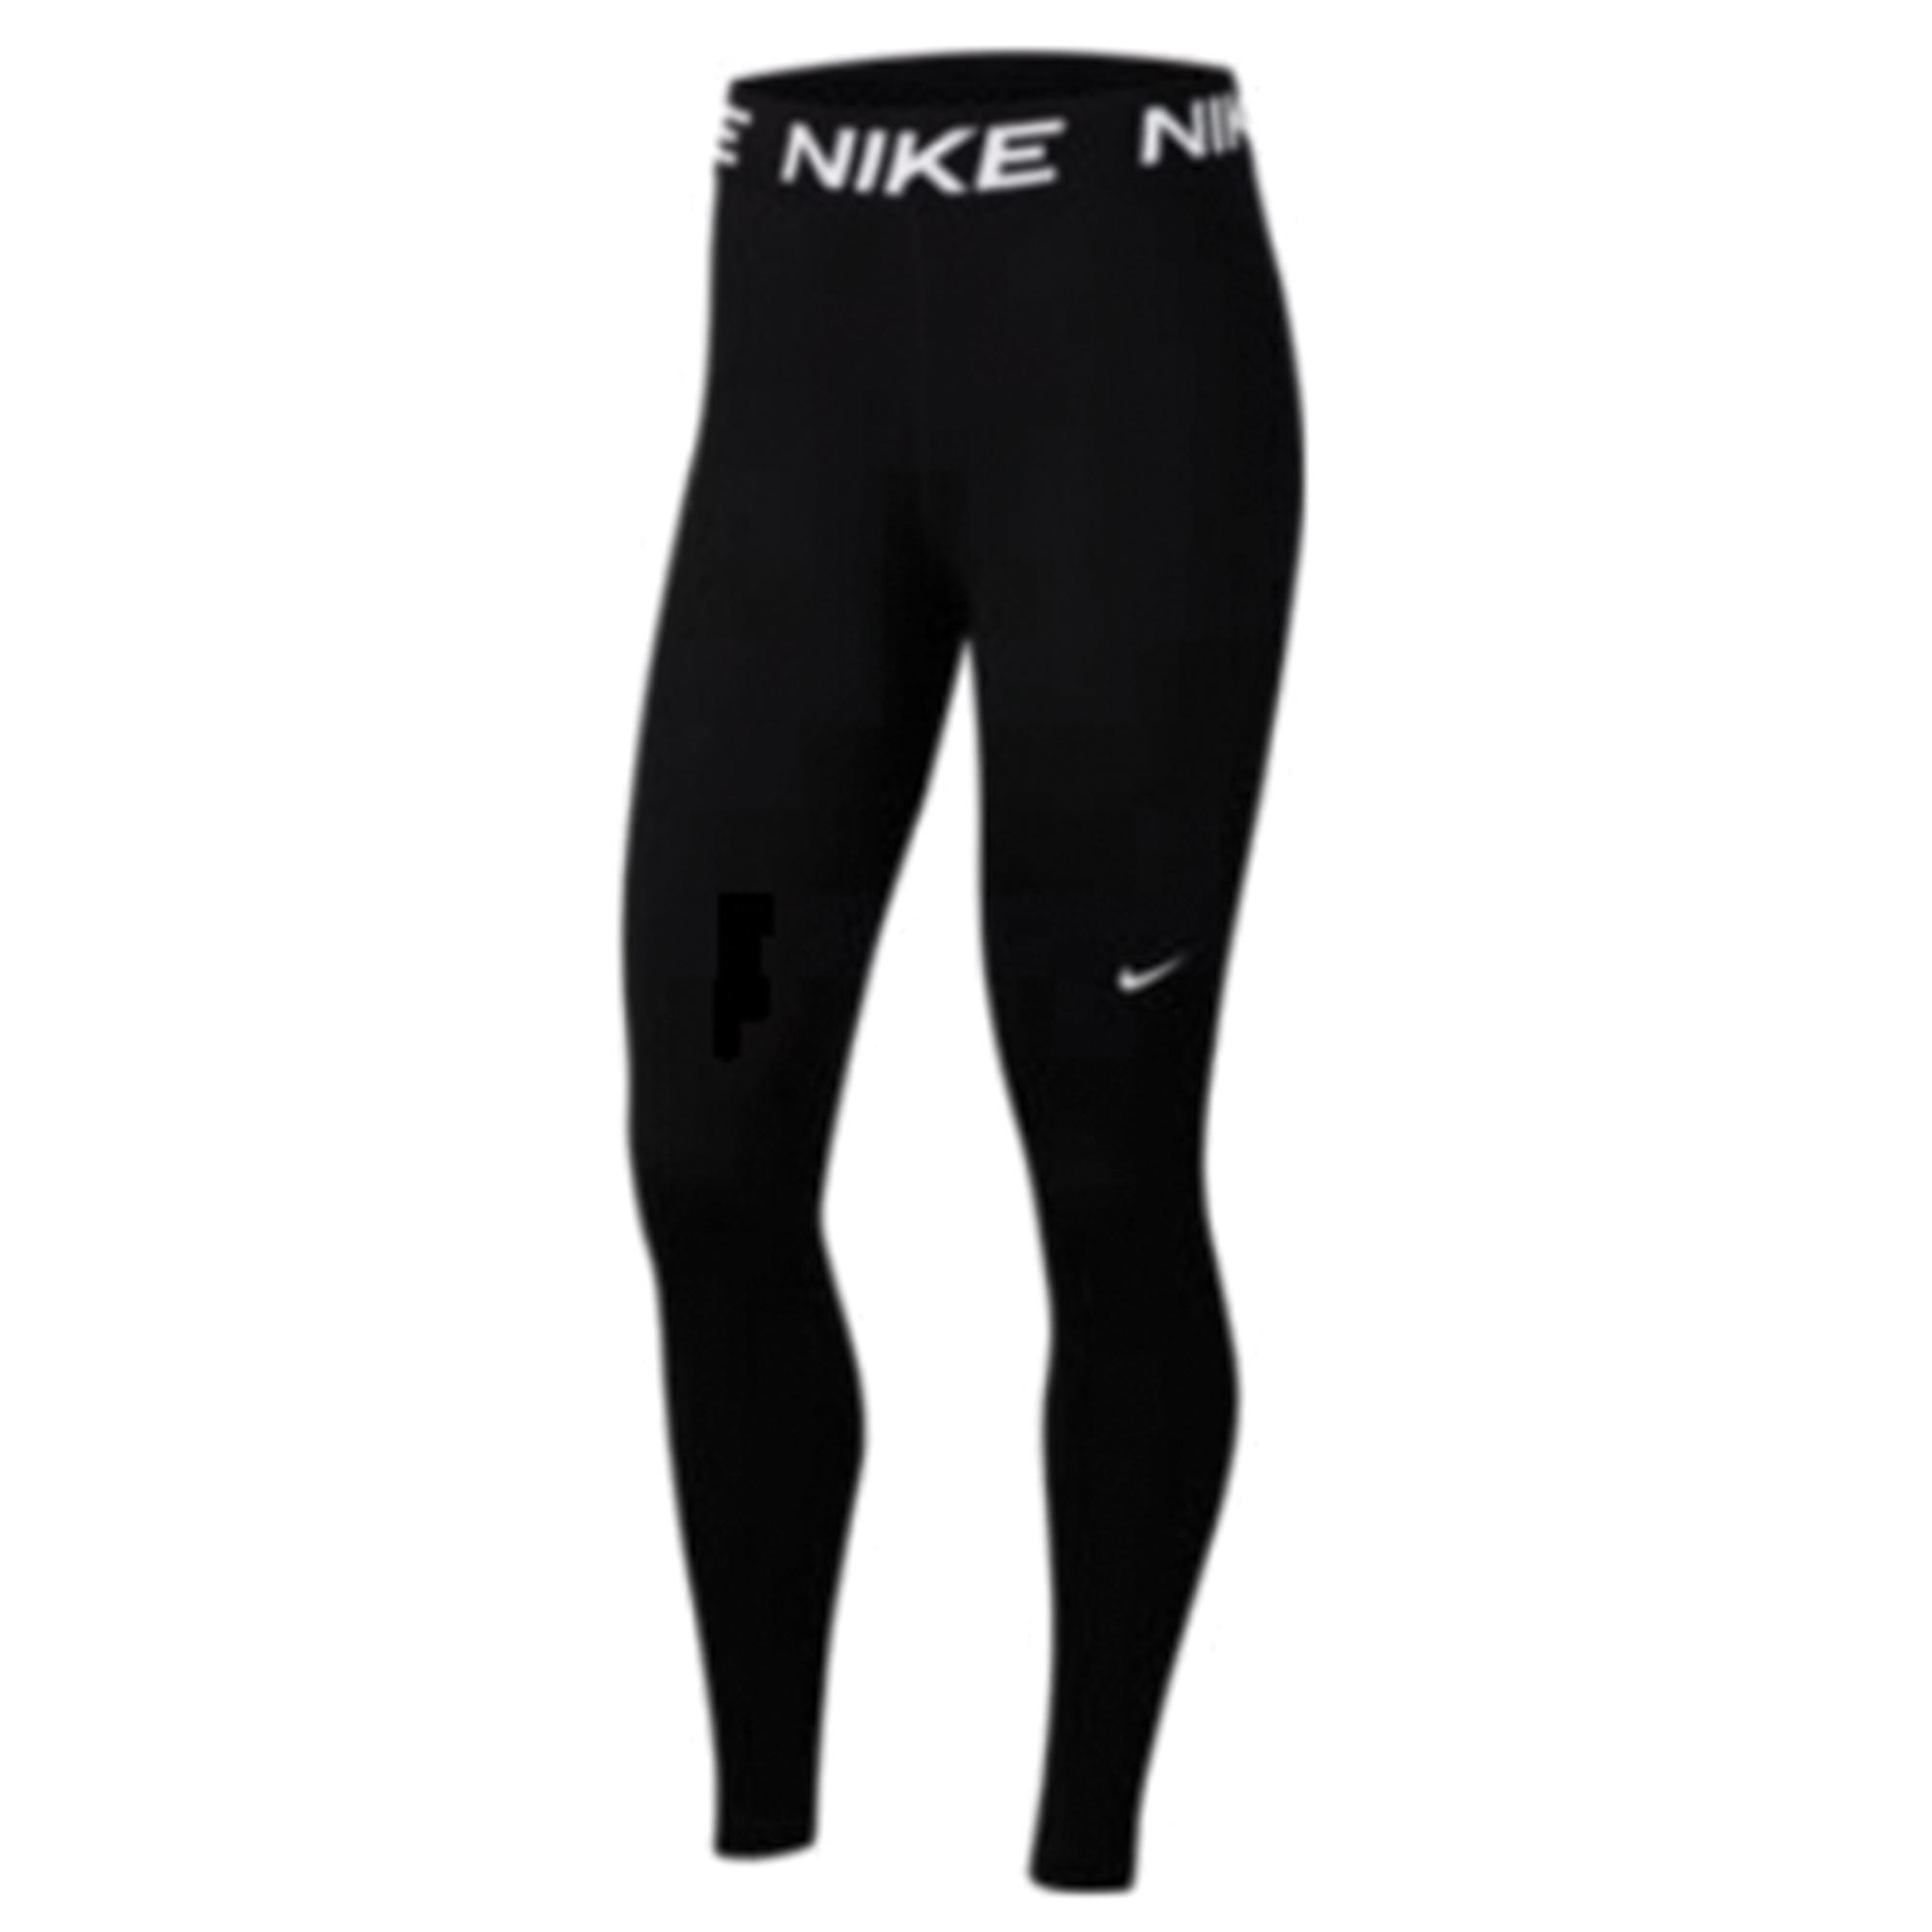 Nike Legging cardio fitness femme noir | Decathlon